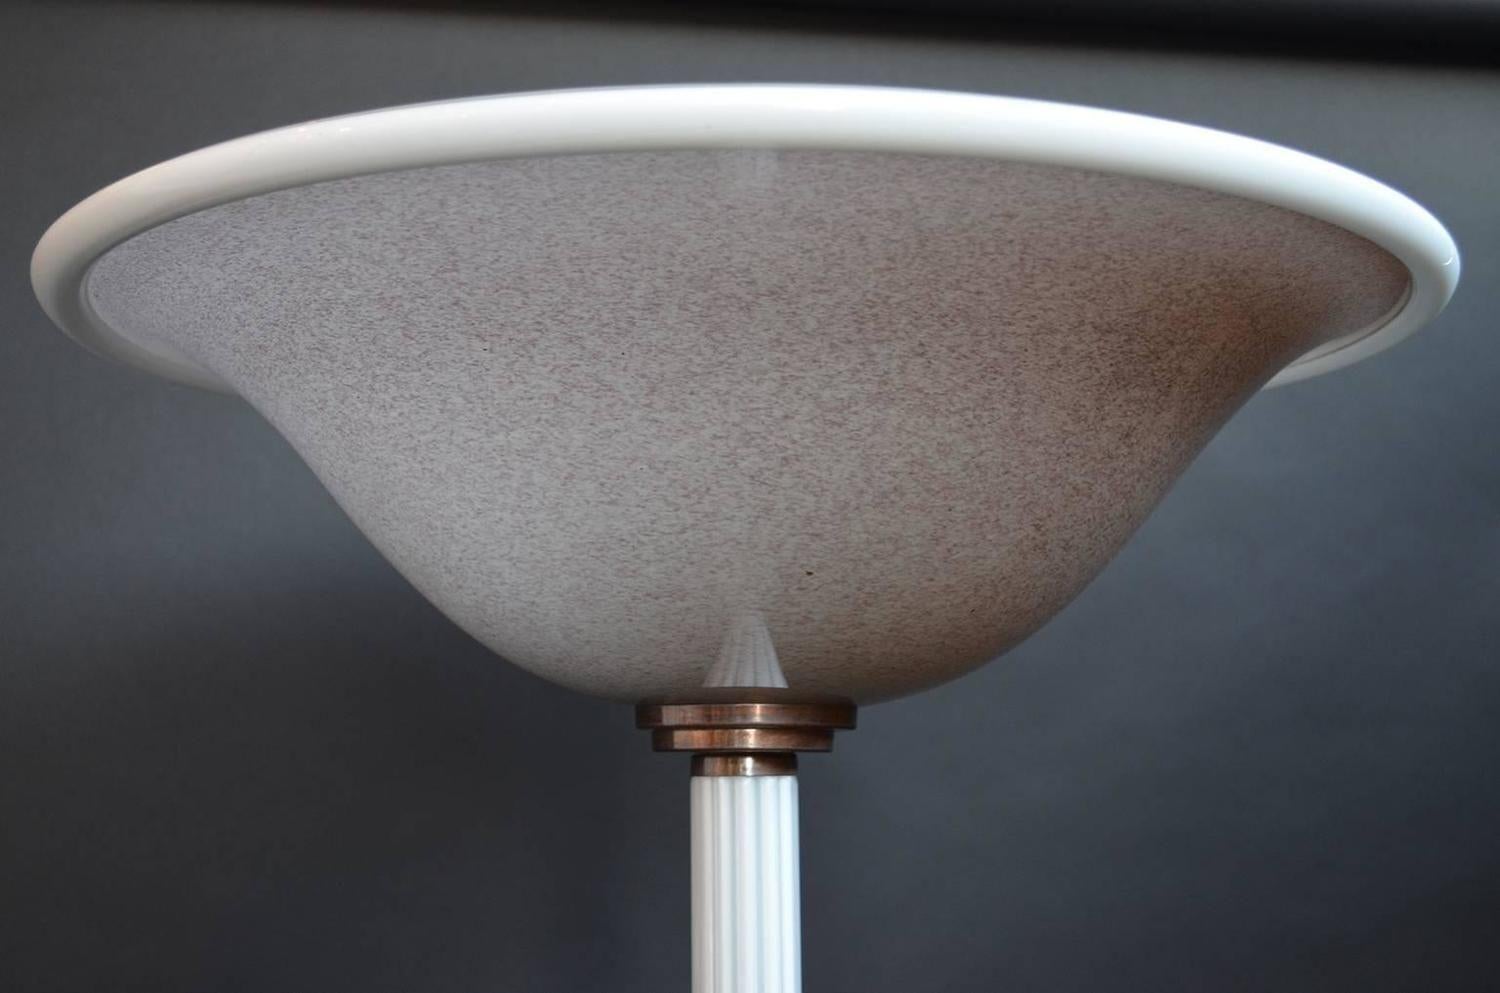 Une paire de torches élégantes et épurées en verre de Murano par Barovier & Toso. La colonne, la base et le bord de l'abat-jour sont blancs. L'abat-jour est de couleur beige crème et mauve. Décorations métalliques en bronze sur la base et la